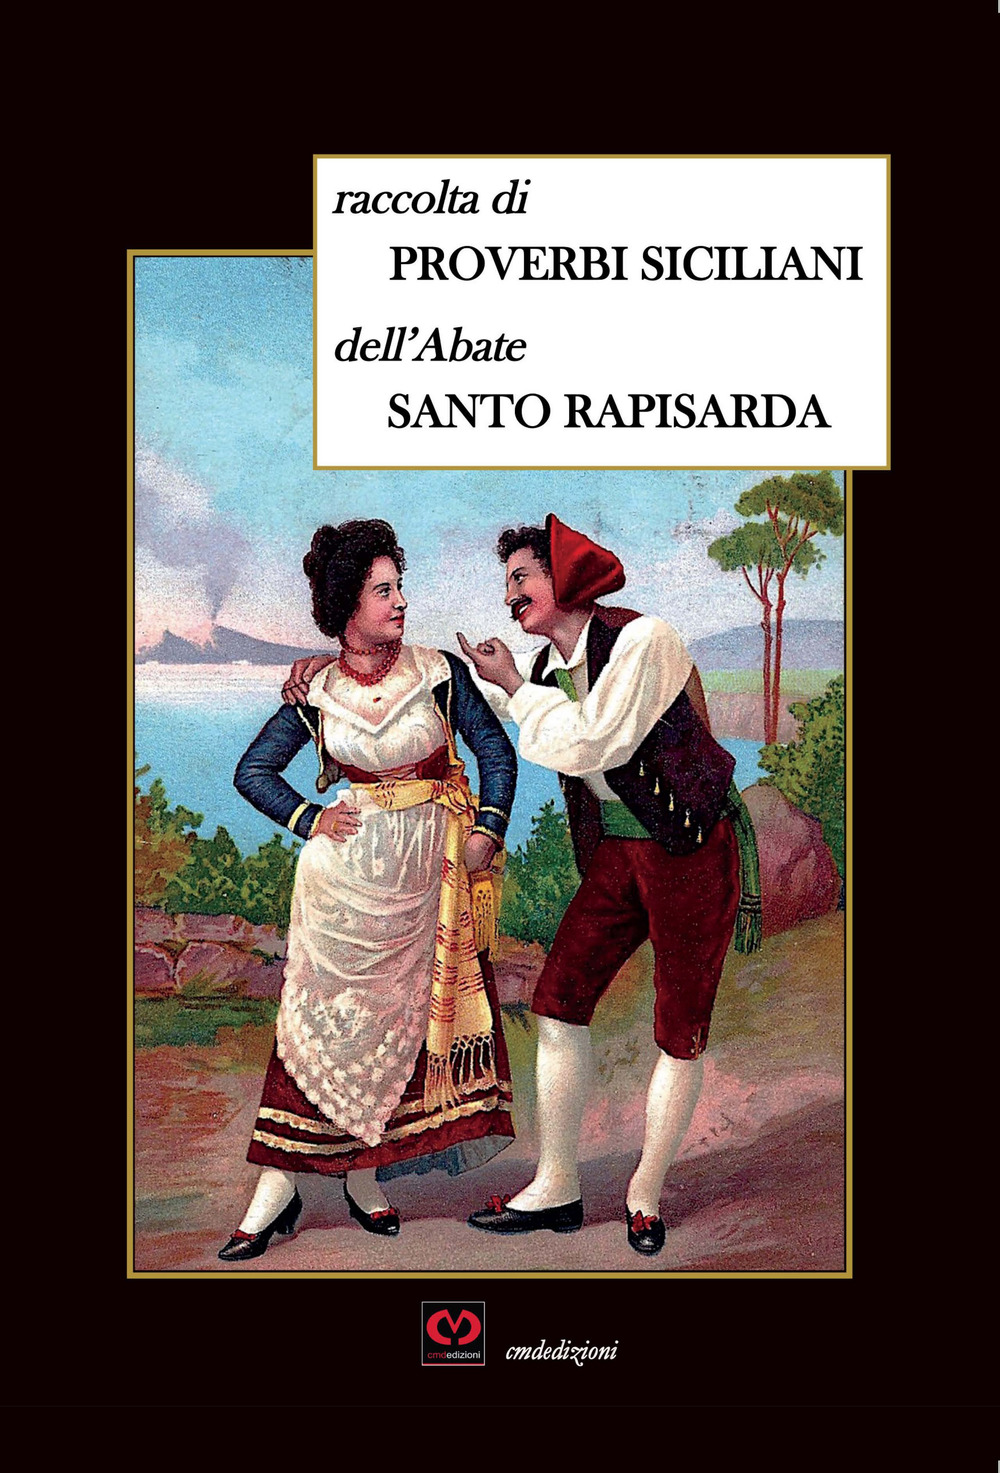 Raccolta di proverbi siciliani ridotti in canzoni dall'abate Santo Rapisarda